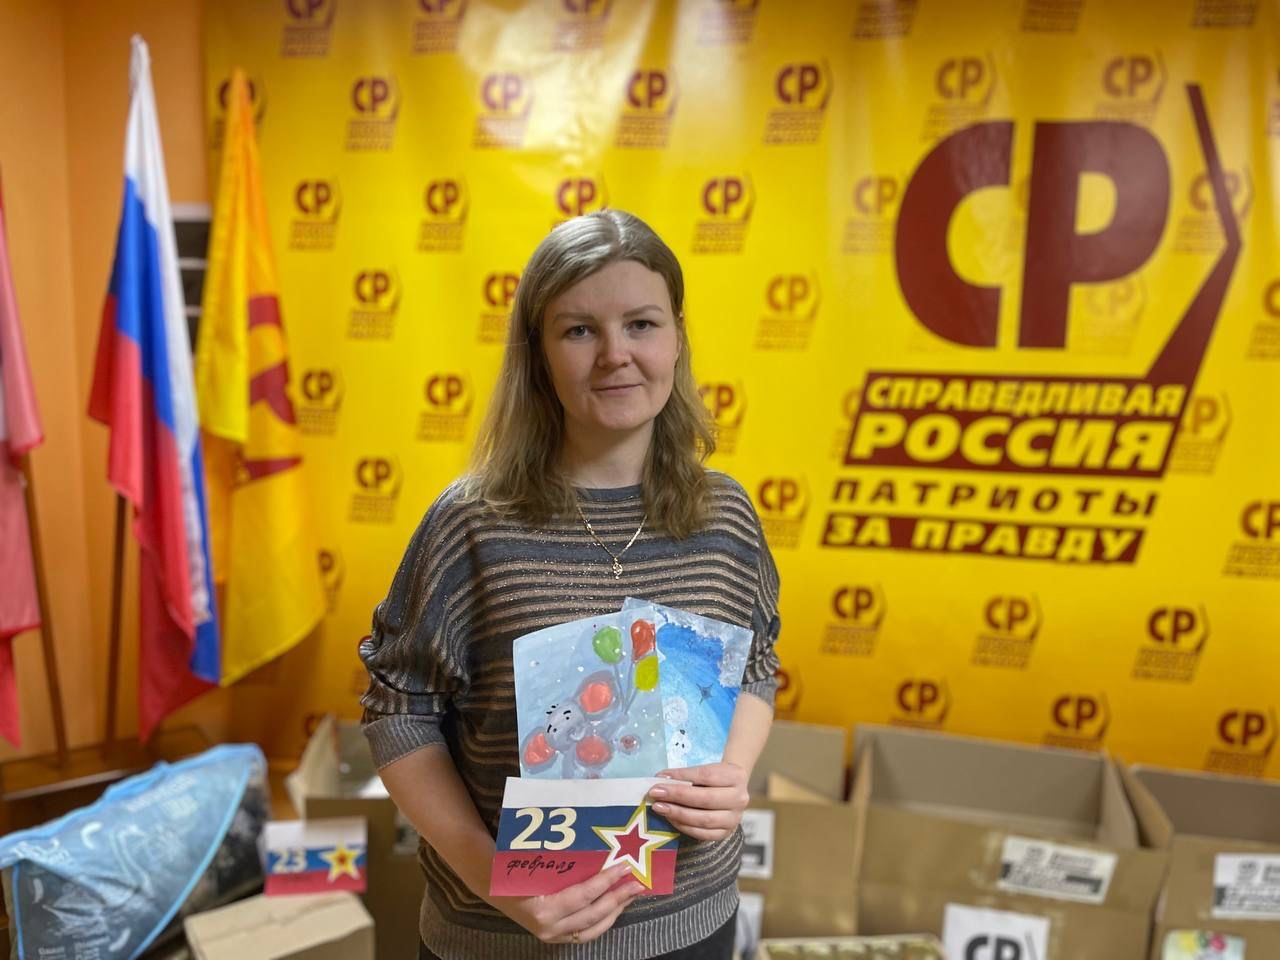 Омские эсеры собрали подарки для бойцов СВО #Омск #Общество #Сегодня